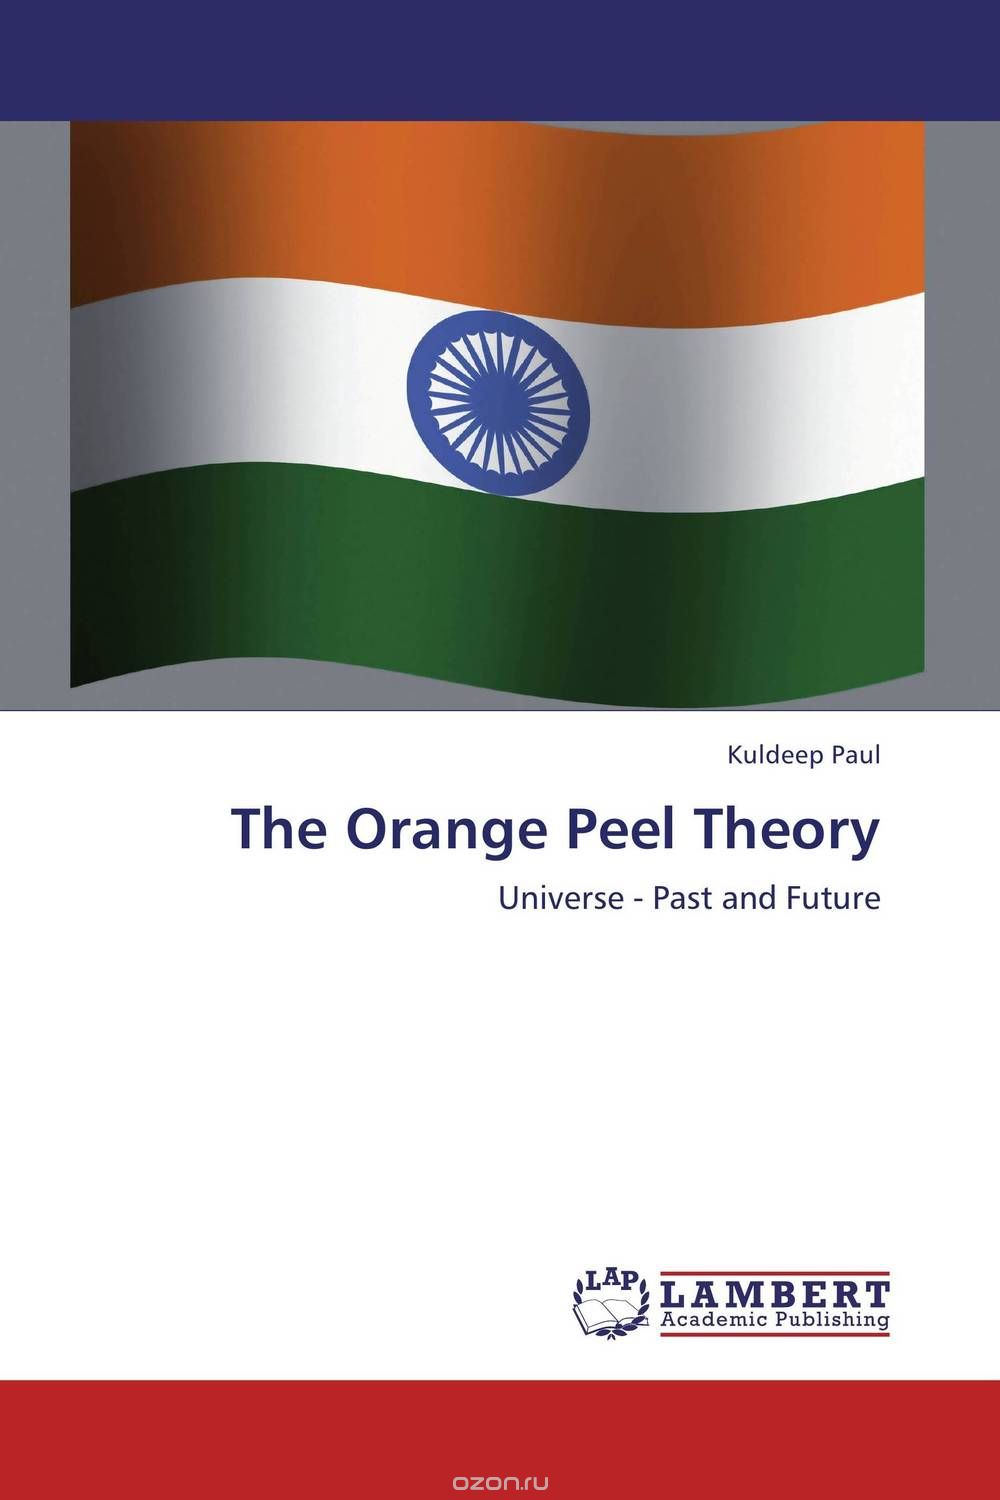 The Orange Peel Theory